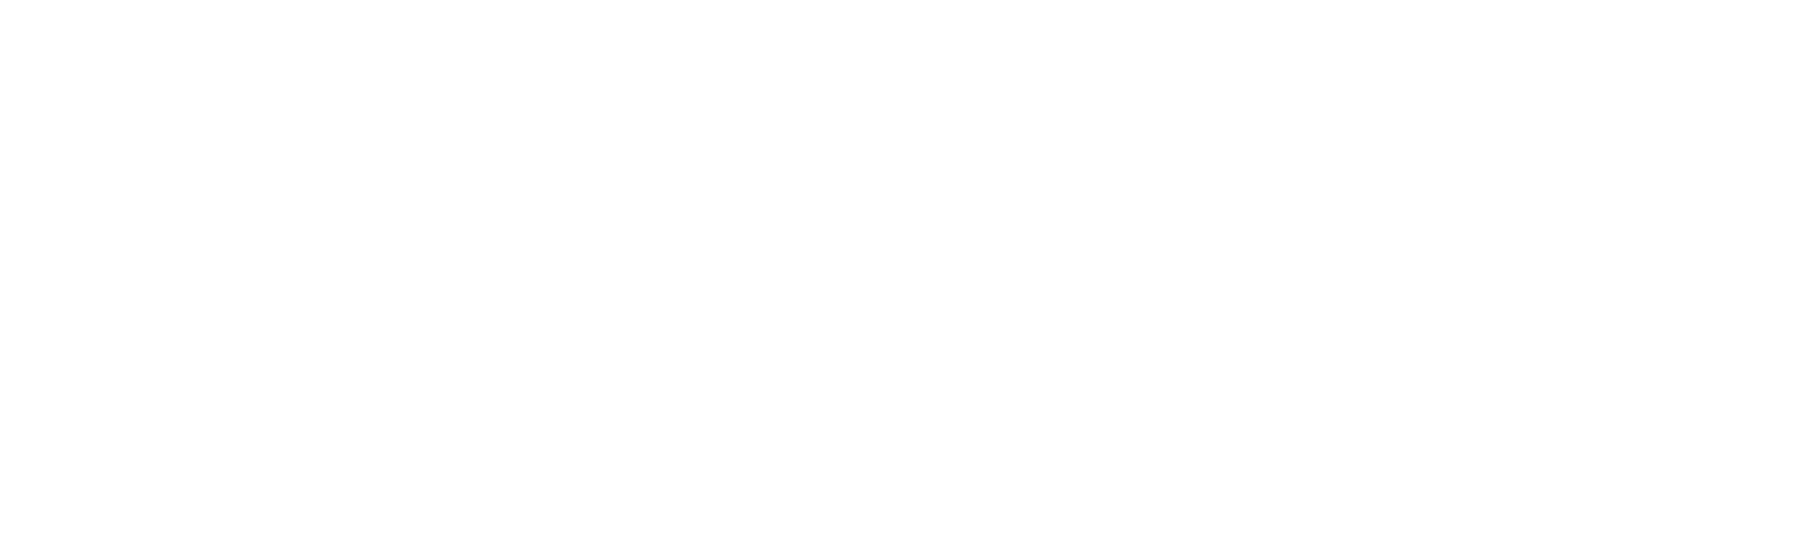 Representative Harley Rouda